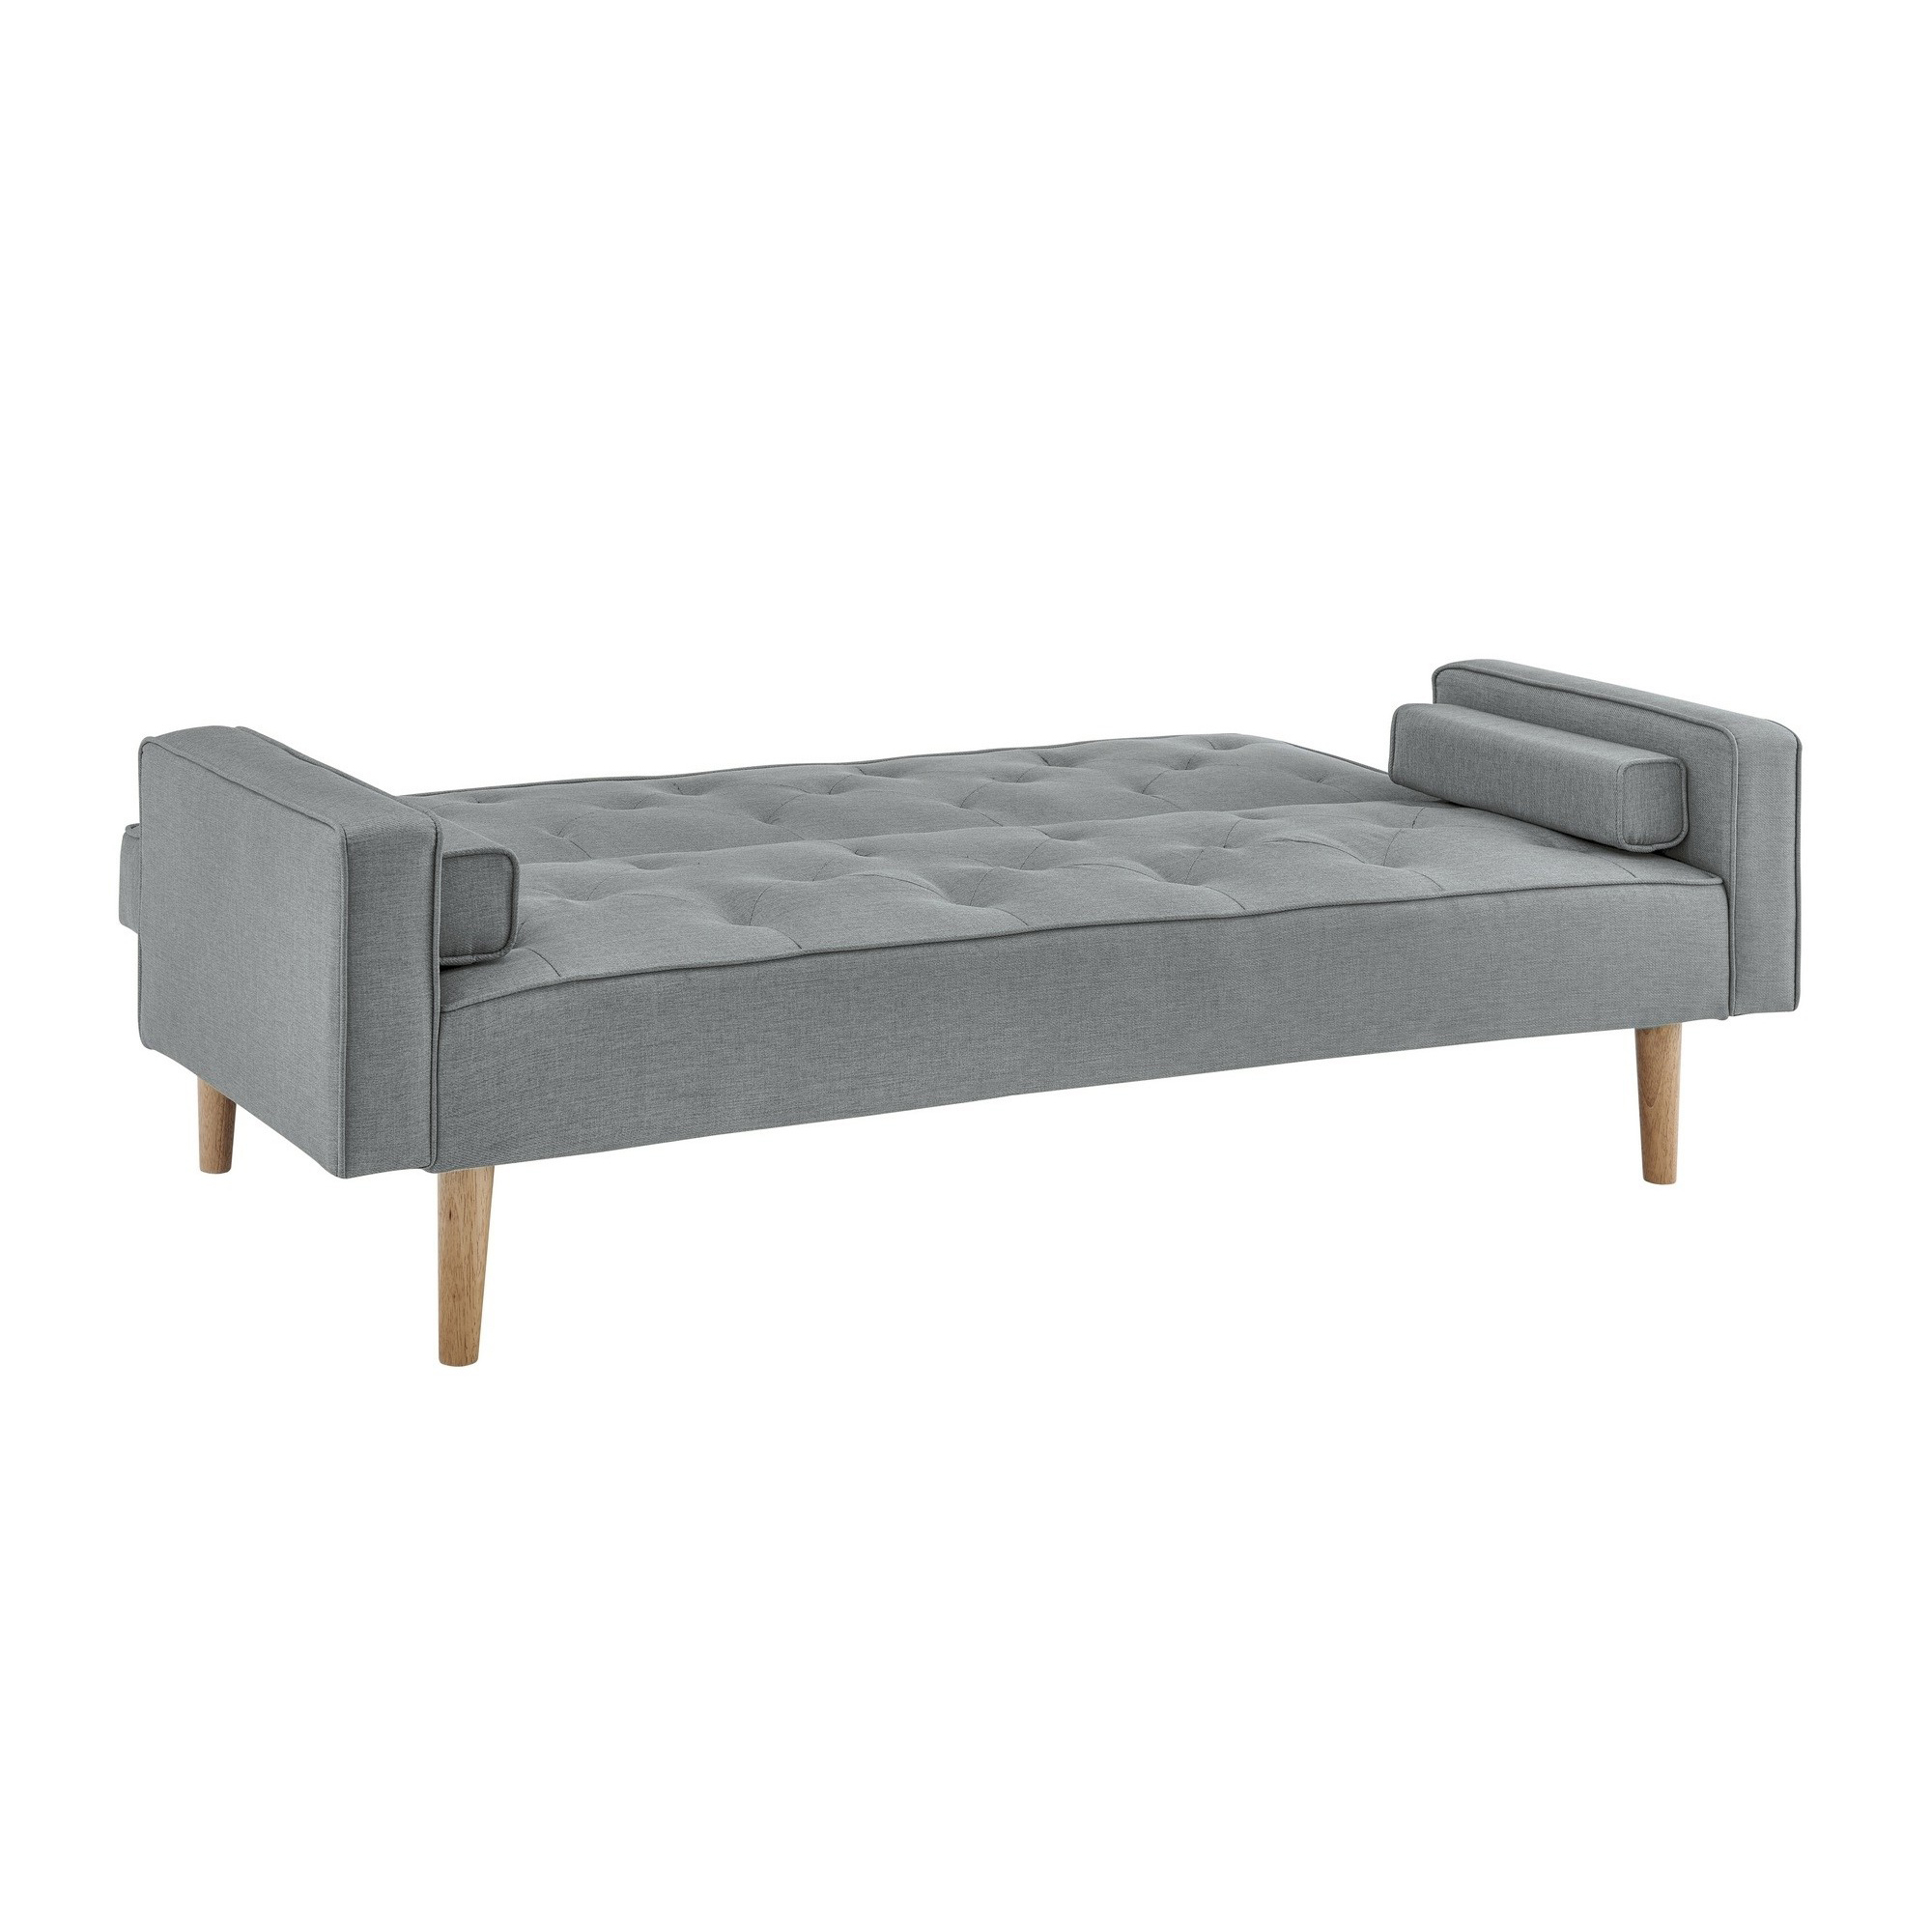 Canapé clic clac en tissu gris clair avec pieds en bois